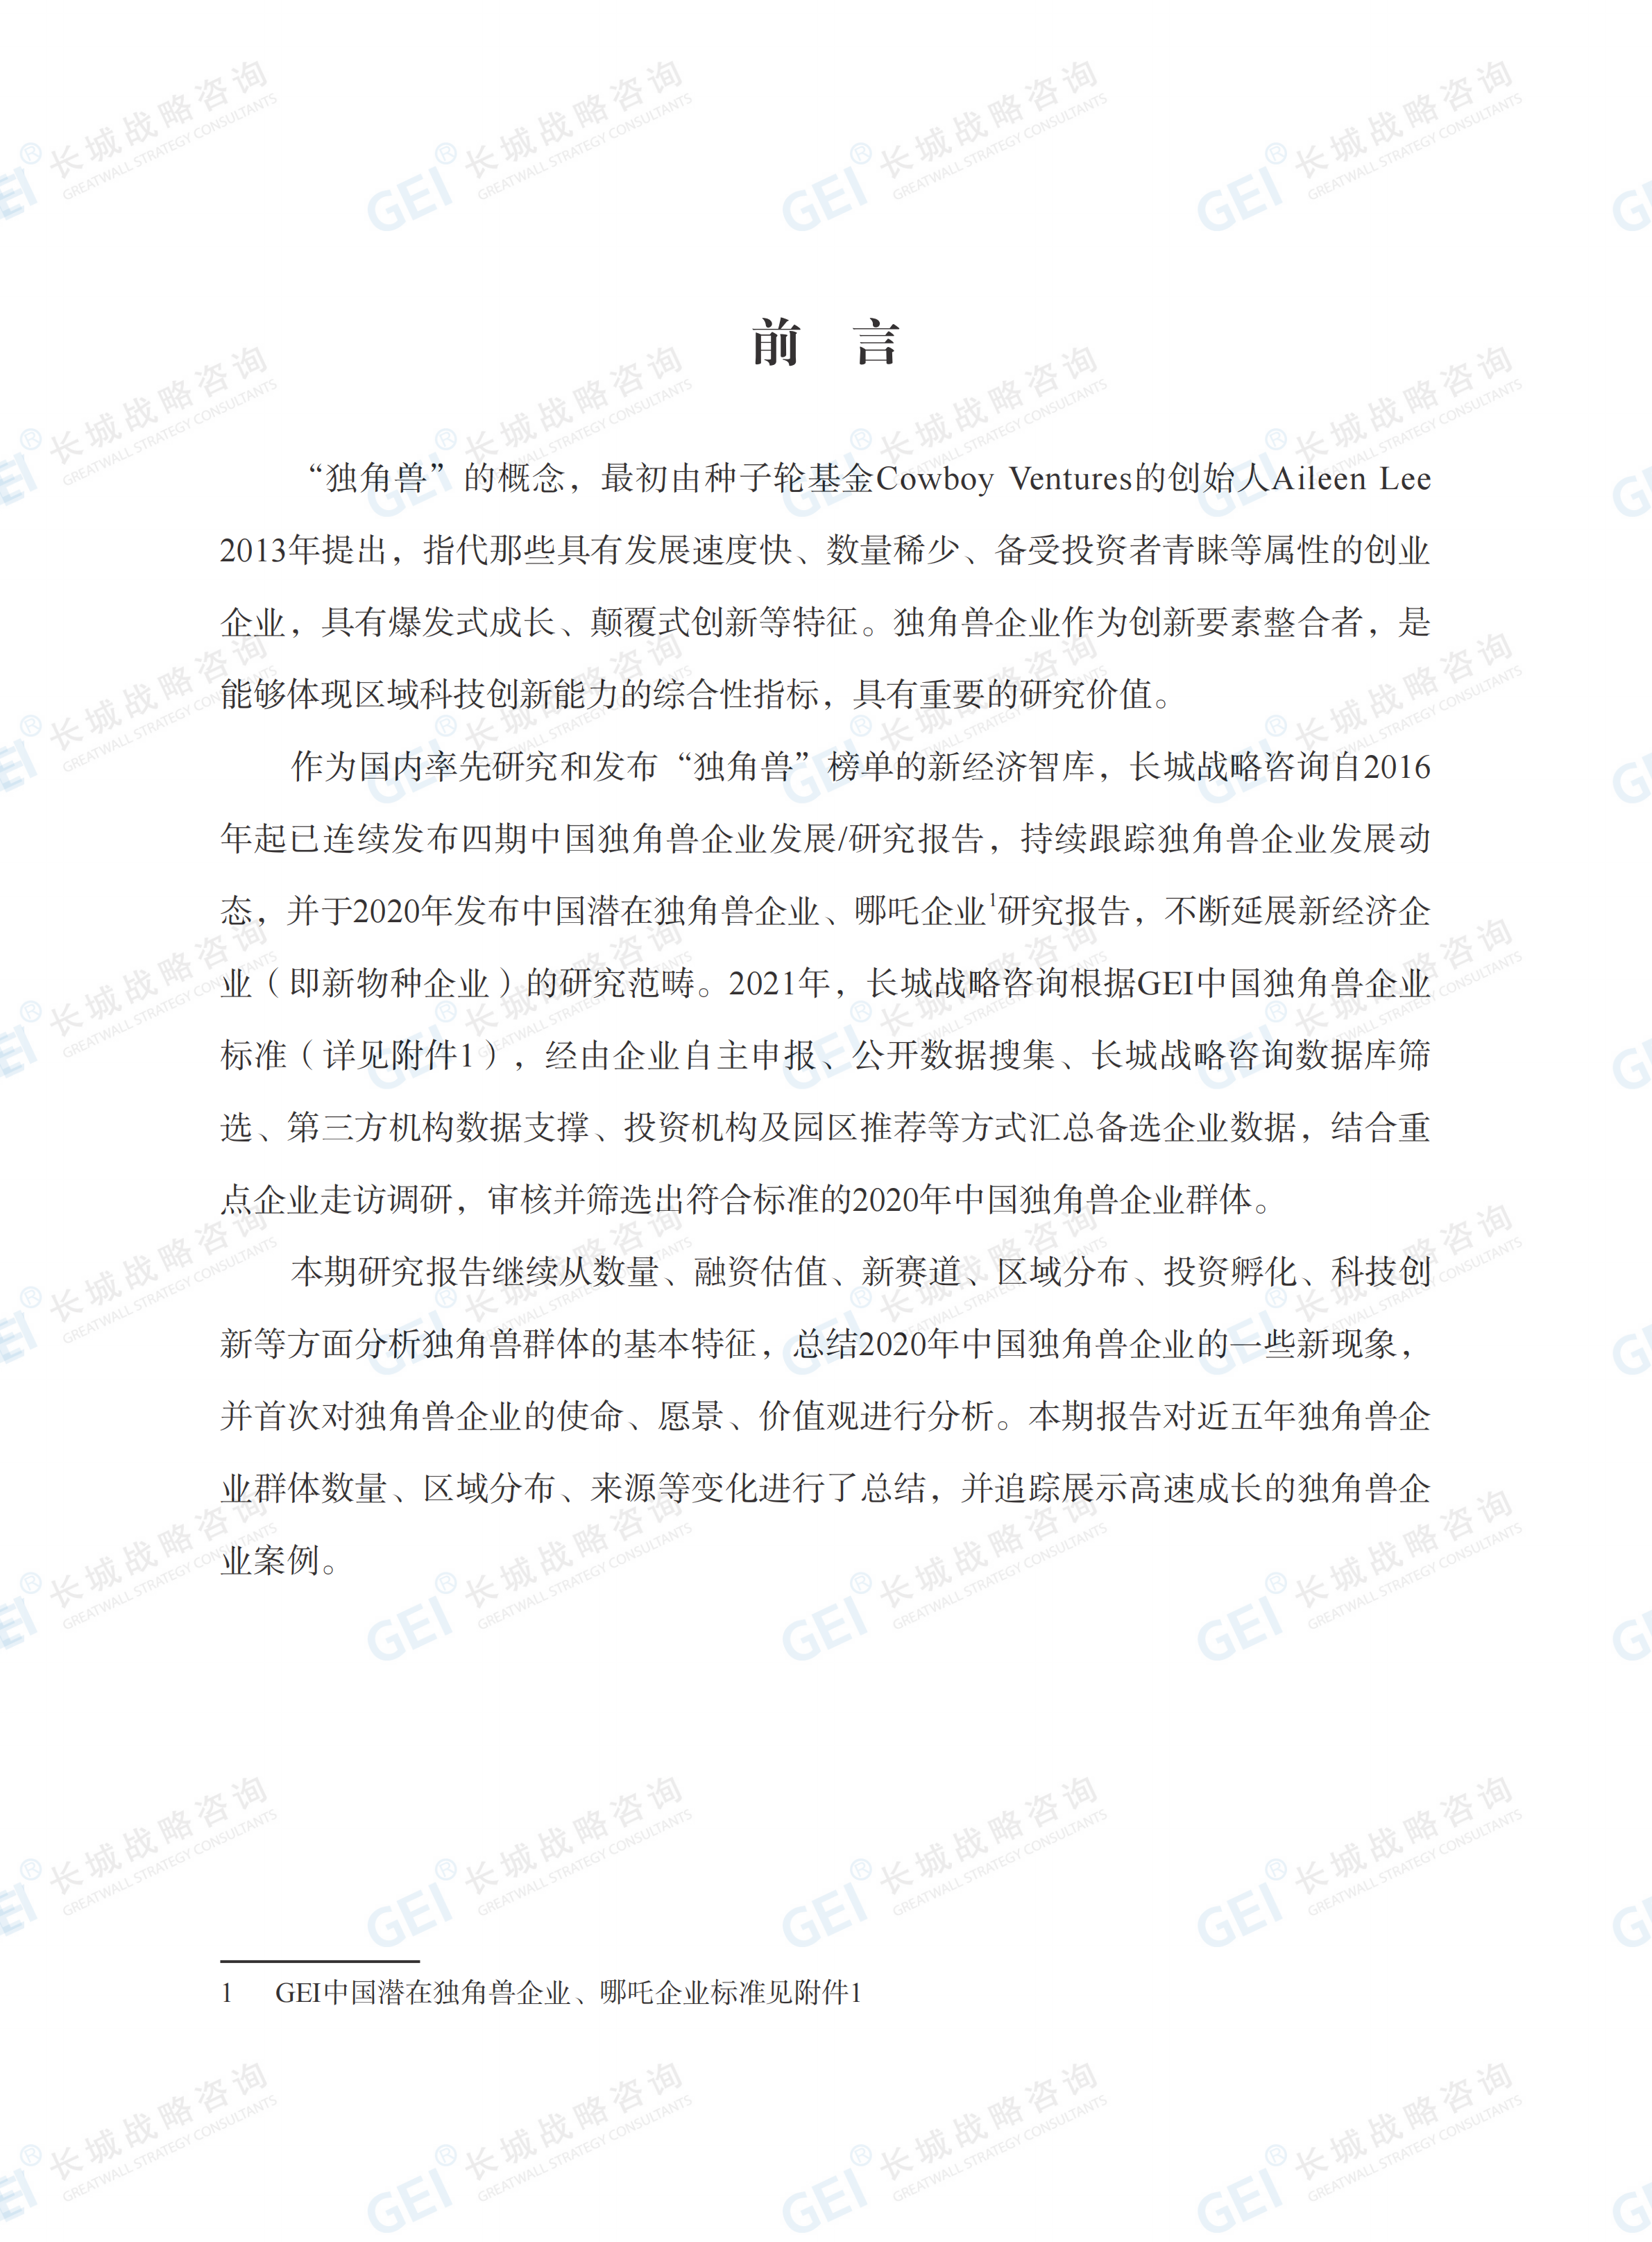 中國獨角獸企業研究報告2021-水印(1)_03.png